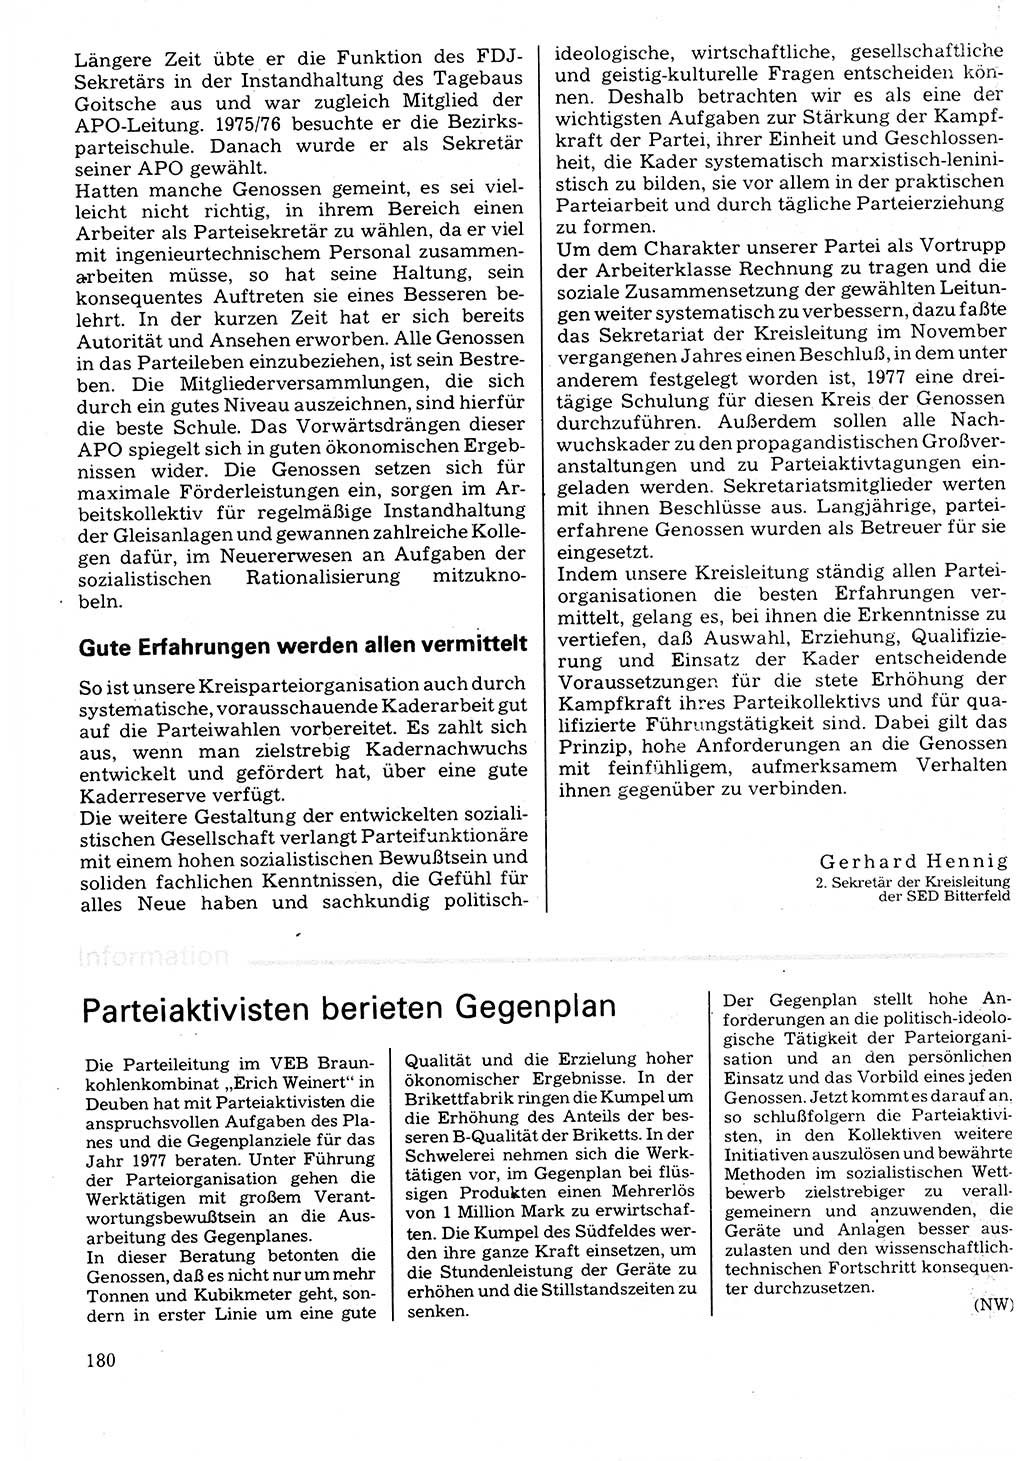 Neuer Weg (NW), Organ des Zentralkomitees (ZK) der SED (Sozialistische Einheitspartei Deutschlands) für Fragen des Parteilebens, 32. Jahrgang [Deutsche Demokratische Republik (DDR)] 1977, Seite 180 (NW ZK SED DDR 1977, S. 180)